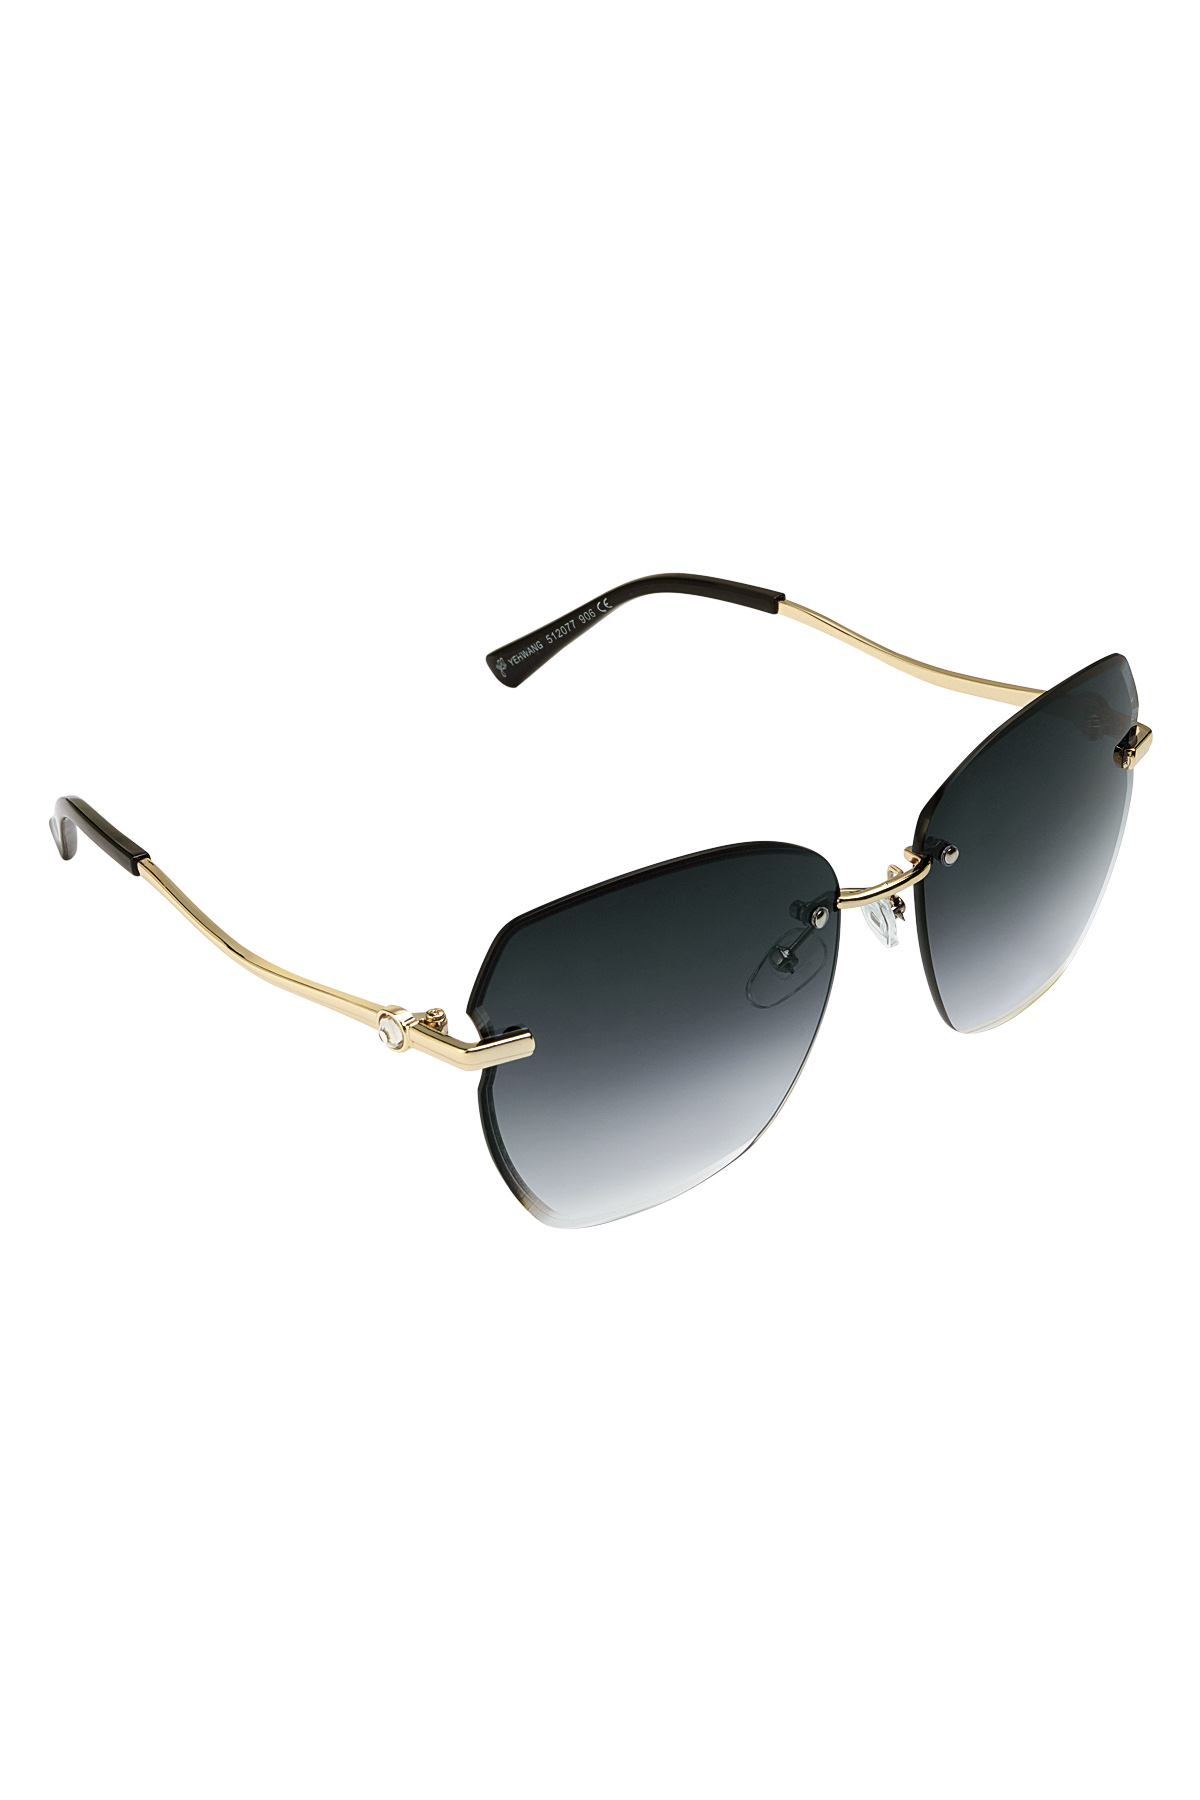 Statement-Sonnenbrille mit goldenen Beschlägen – Grau